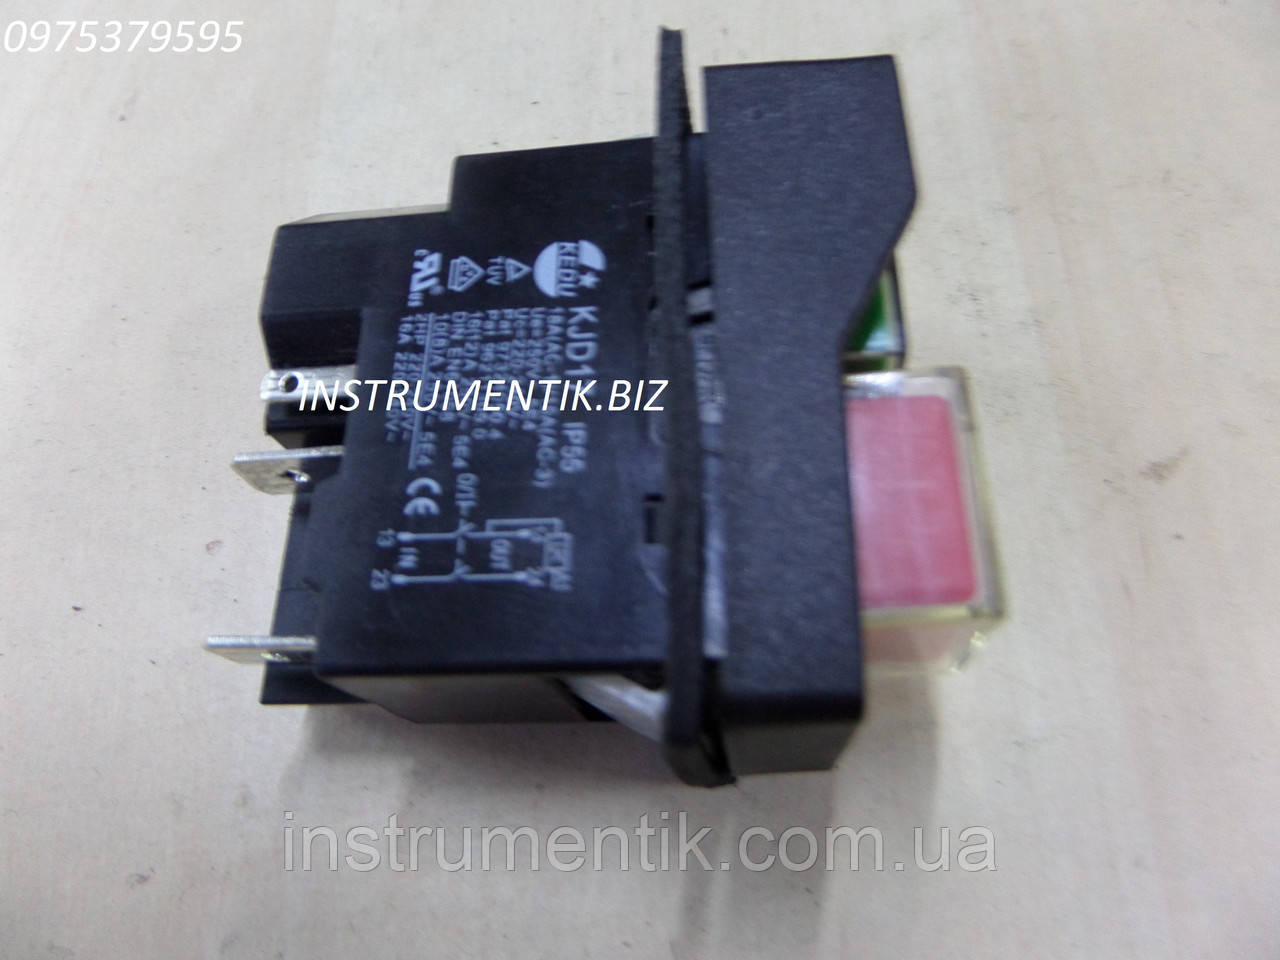 Выключатель кнопка KJD17 (магнитный пускатель) Продажа опт и розница .